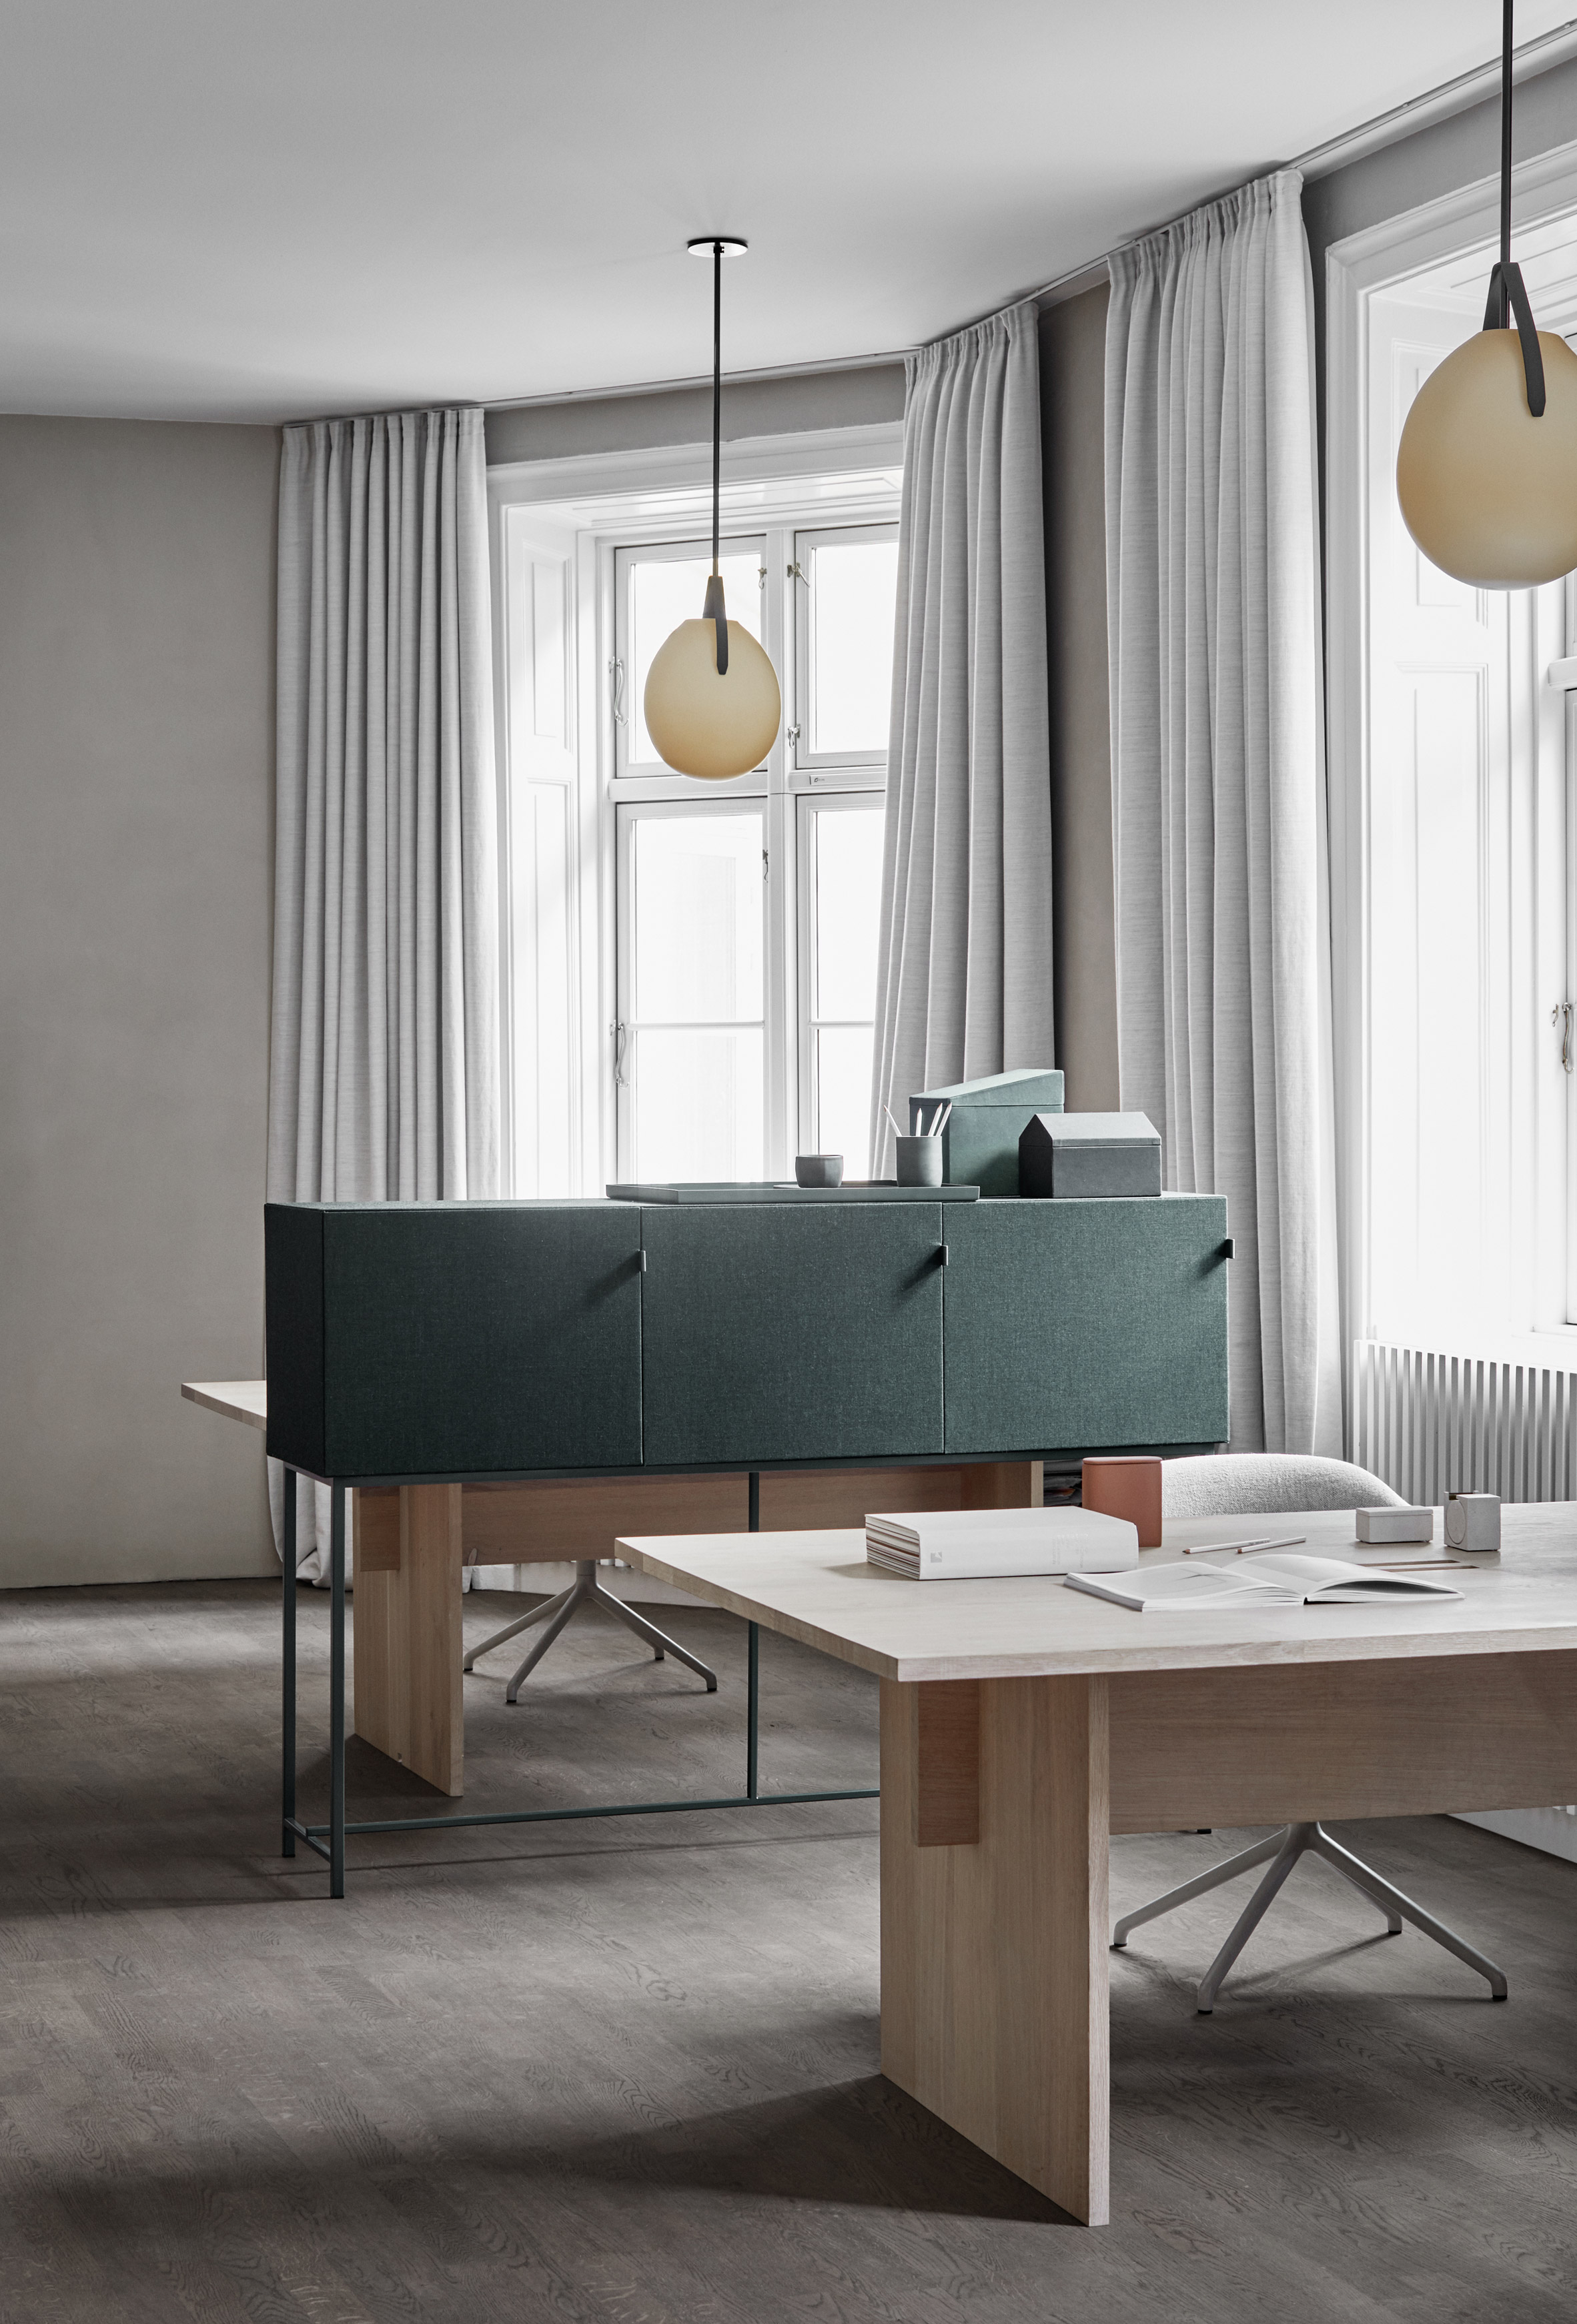 tone-cabinets-norm-architects-zilenzio-design-furniture-cabinets_dezeen_2364_col_4